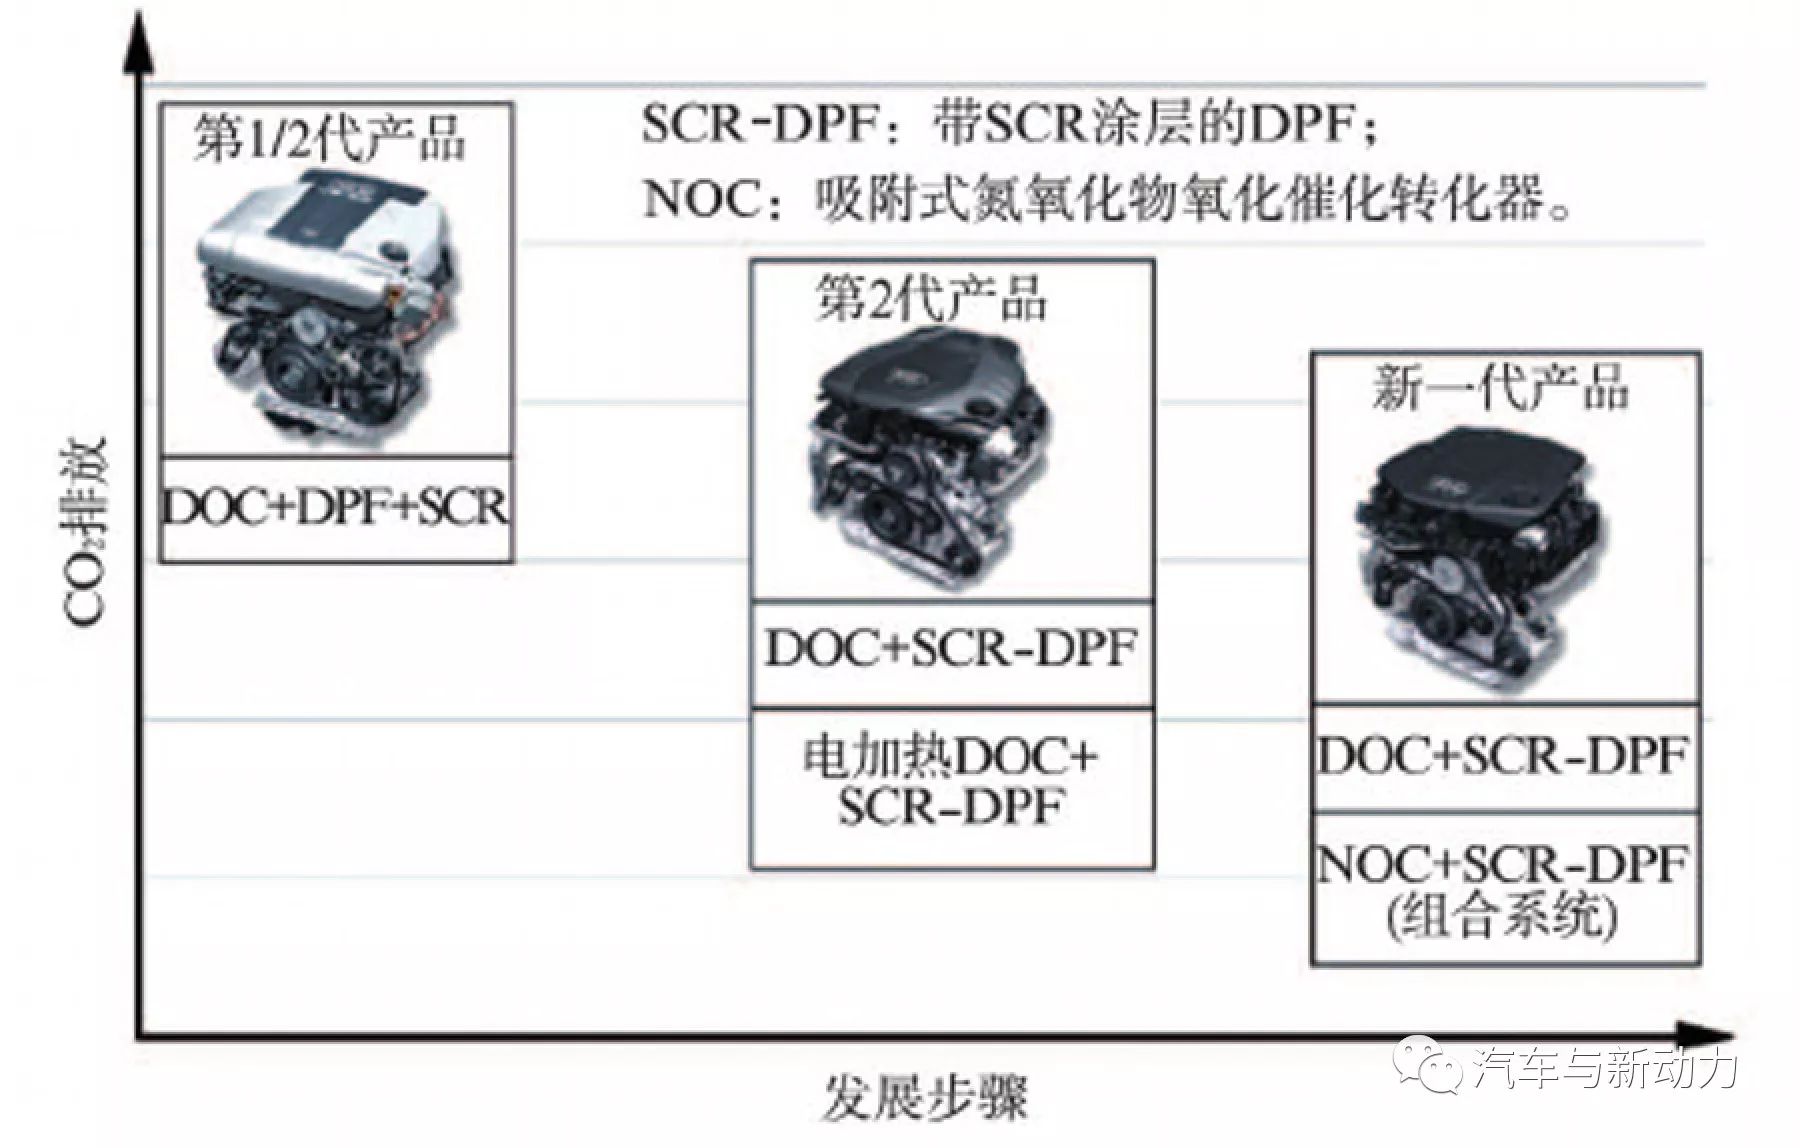 关于Audi公司V6涡轮增压直喷式轿车柴油机2性能分析